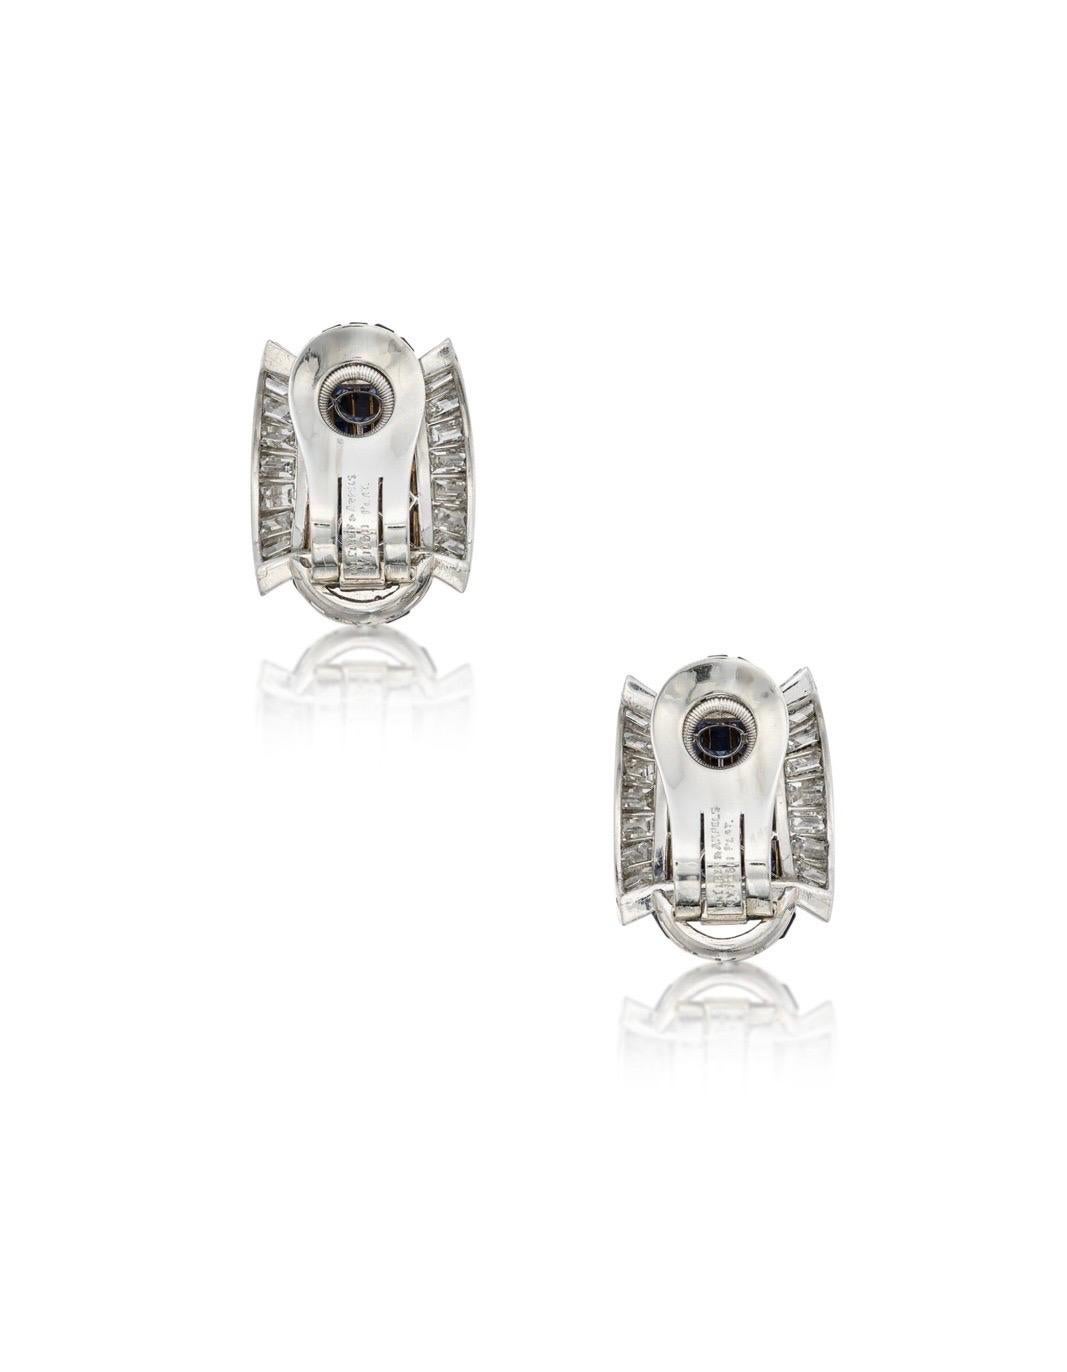 Original VCA earrings of calibré-cut sapphires, bordered by baguette diamonds, signed Van Cleef & Arpels, numbered N.Y.10511. 